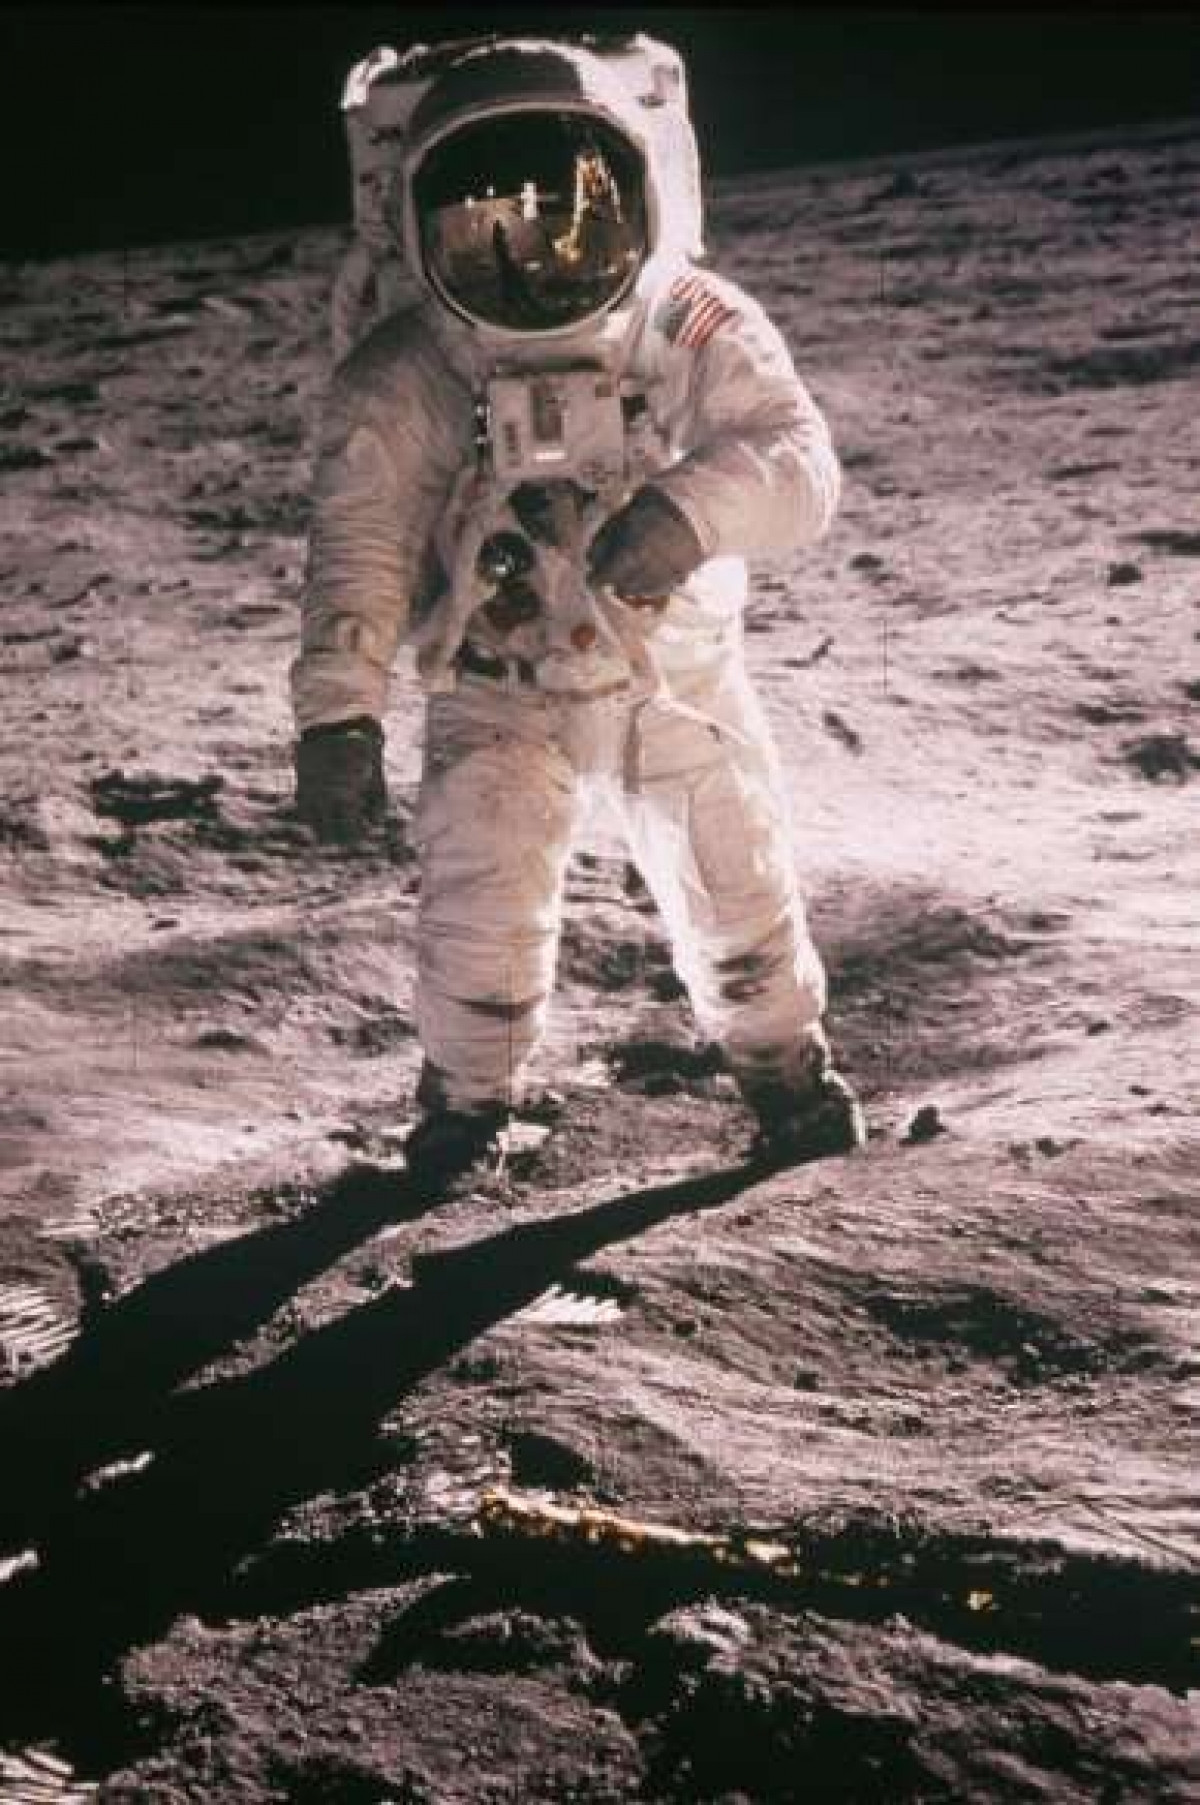 Phi hành gia Buzz Aldrin trong chuyến du hành đầu tiên hạ cánh xuống Mặt Trăng năm 1969. Ngày 20/7/1969, đánh dấu một ngày quan trọng trong lịch sử: lần đầu tiên con người đặt chân lên mặt trăng. Neil Armstrong là người đầu tiên hạ cánh, Buzz Aldrin theo phía sau.